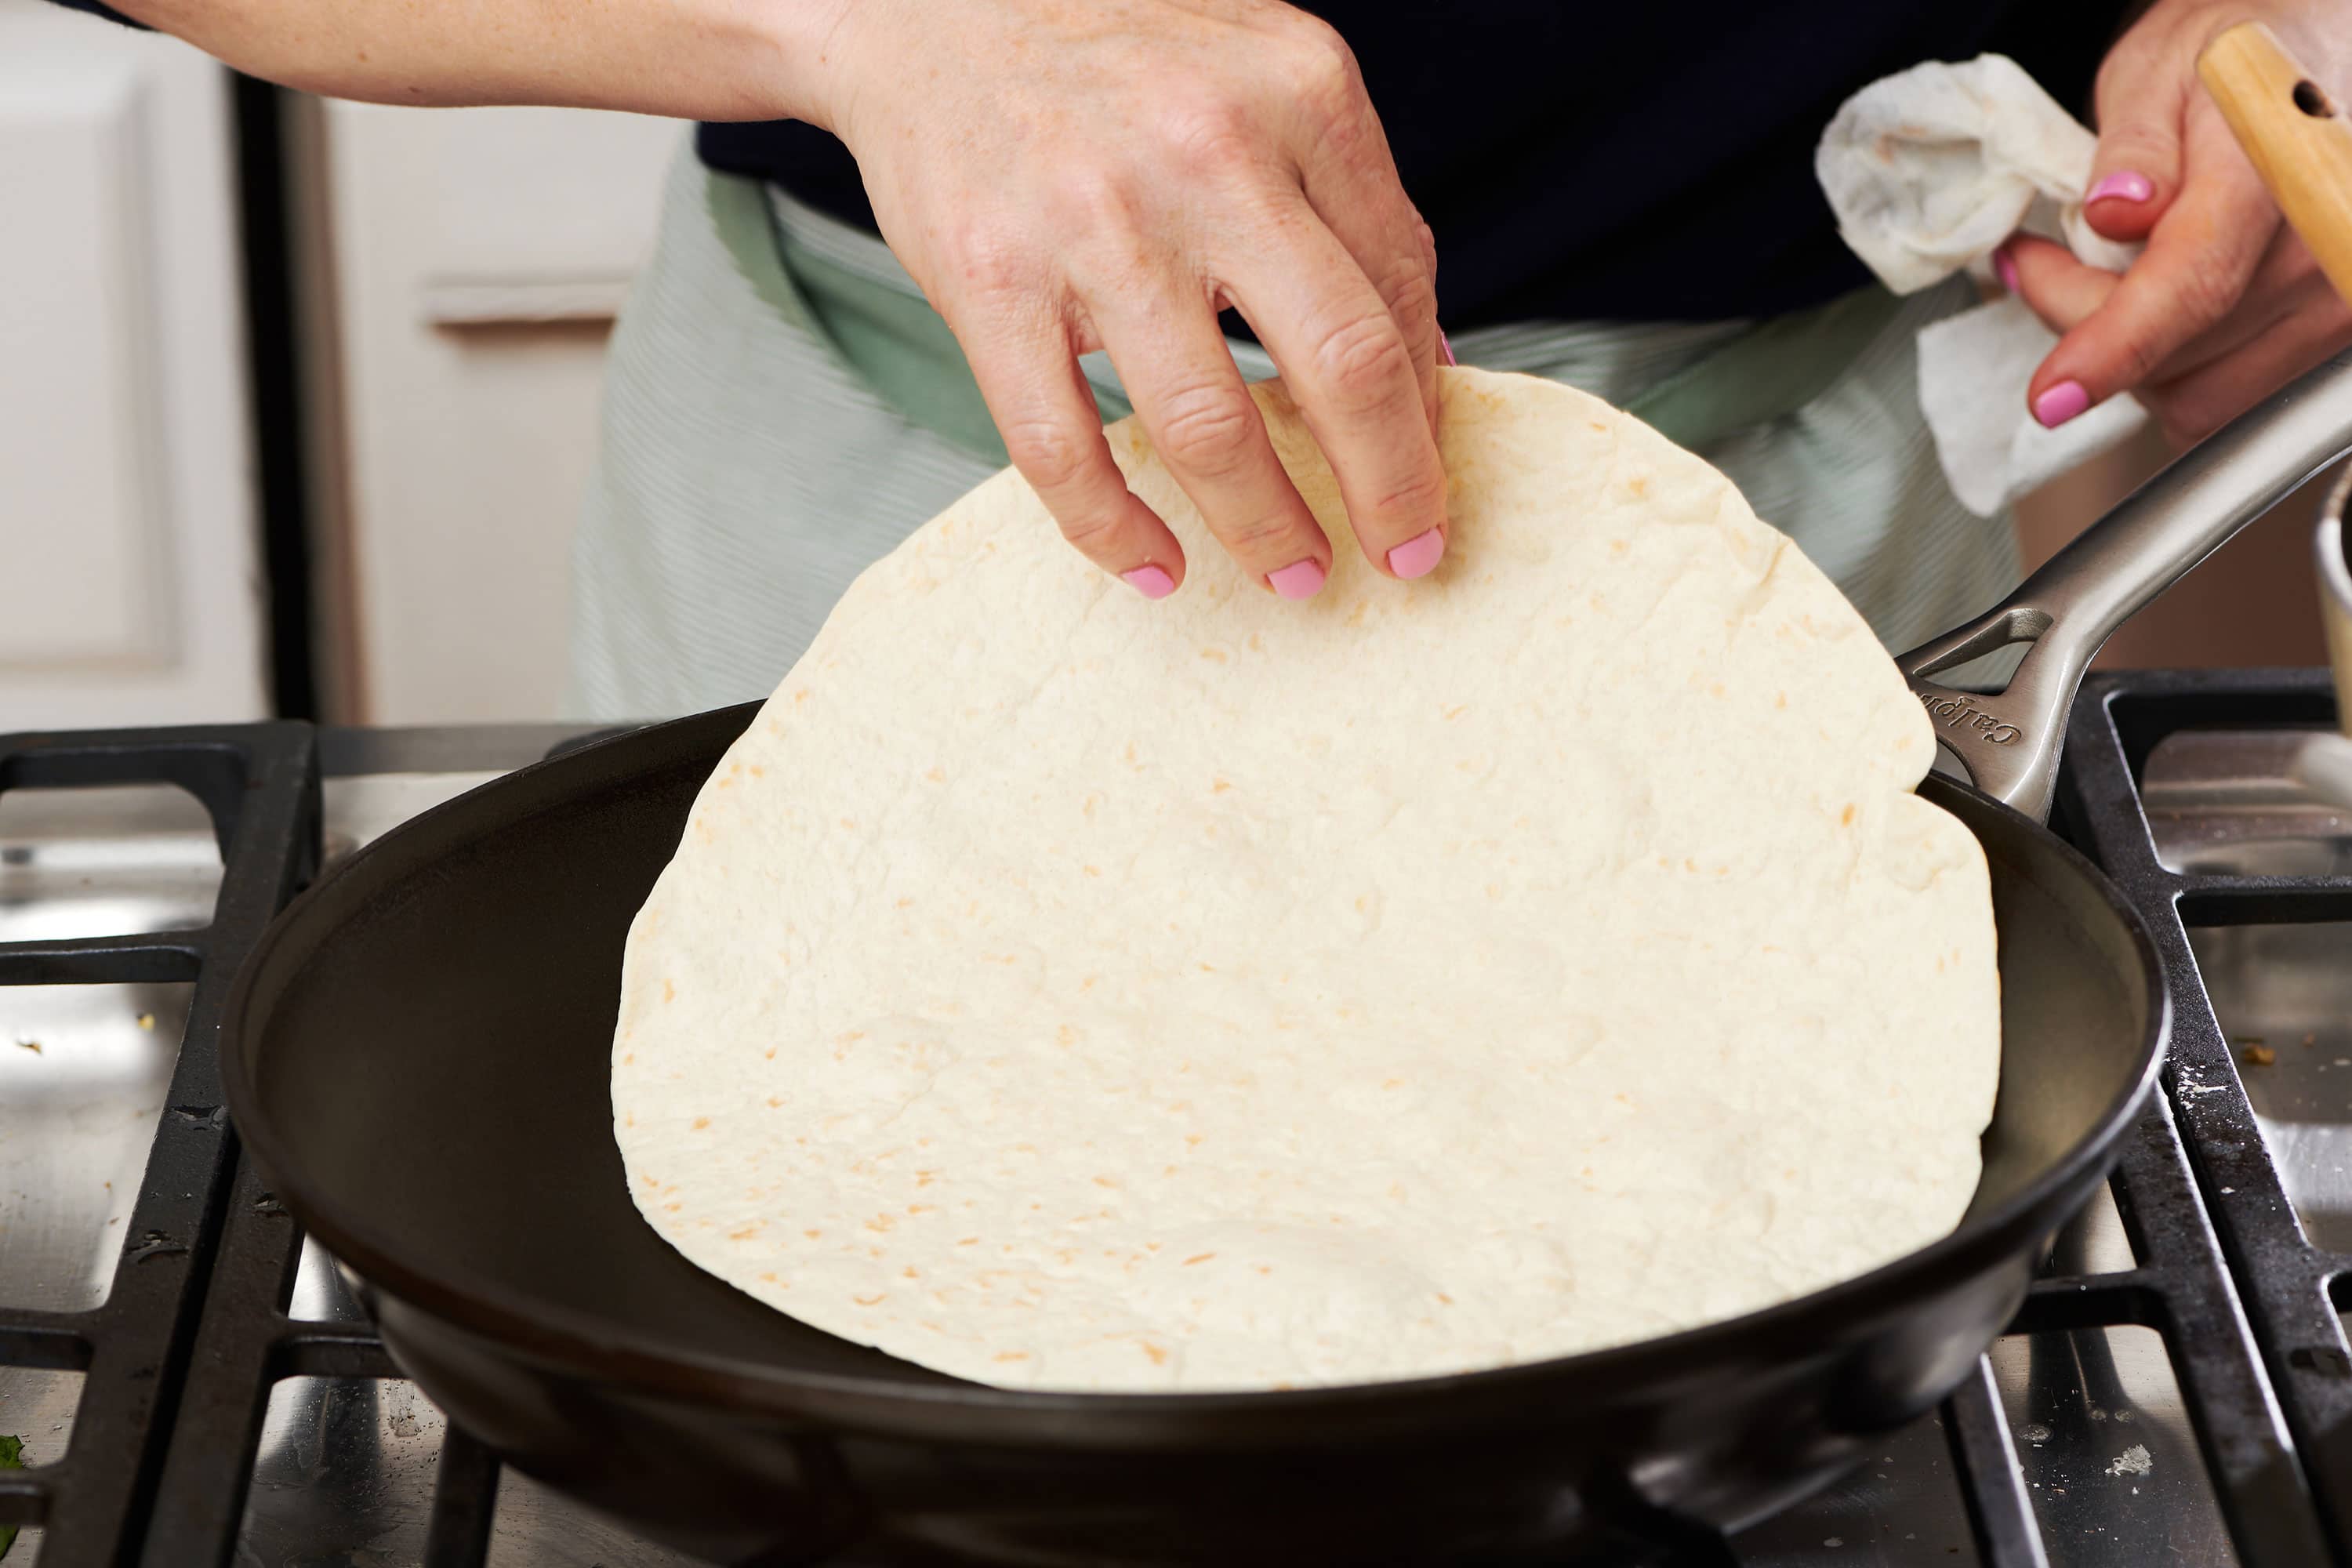 How to Heat Tortillas 3 Best Methods